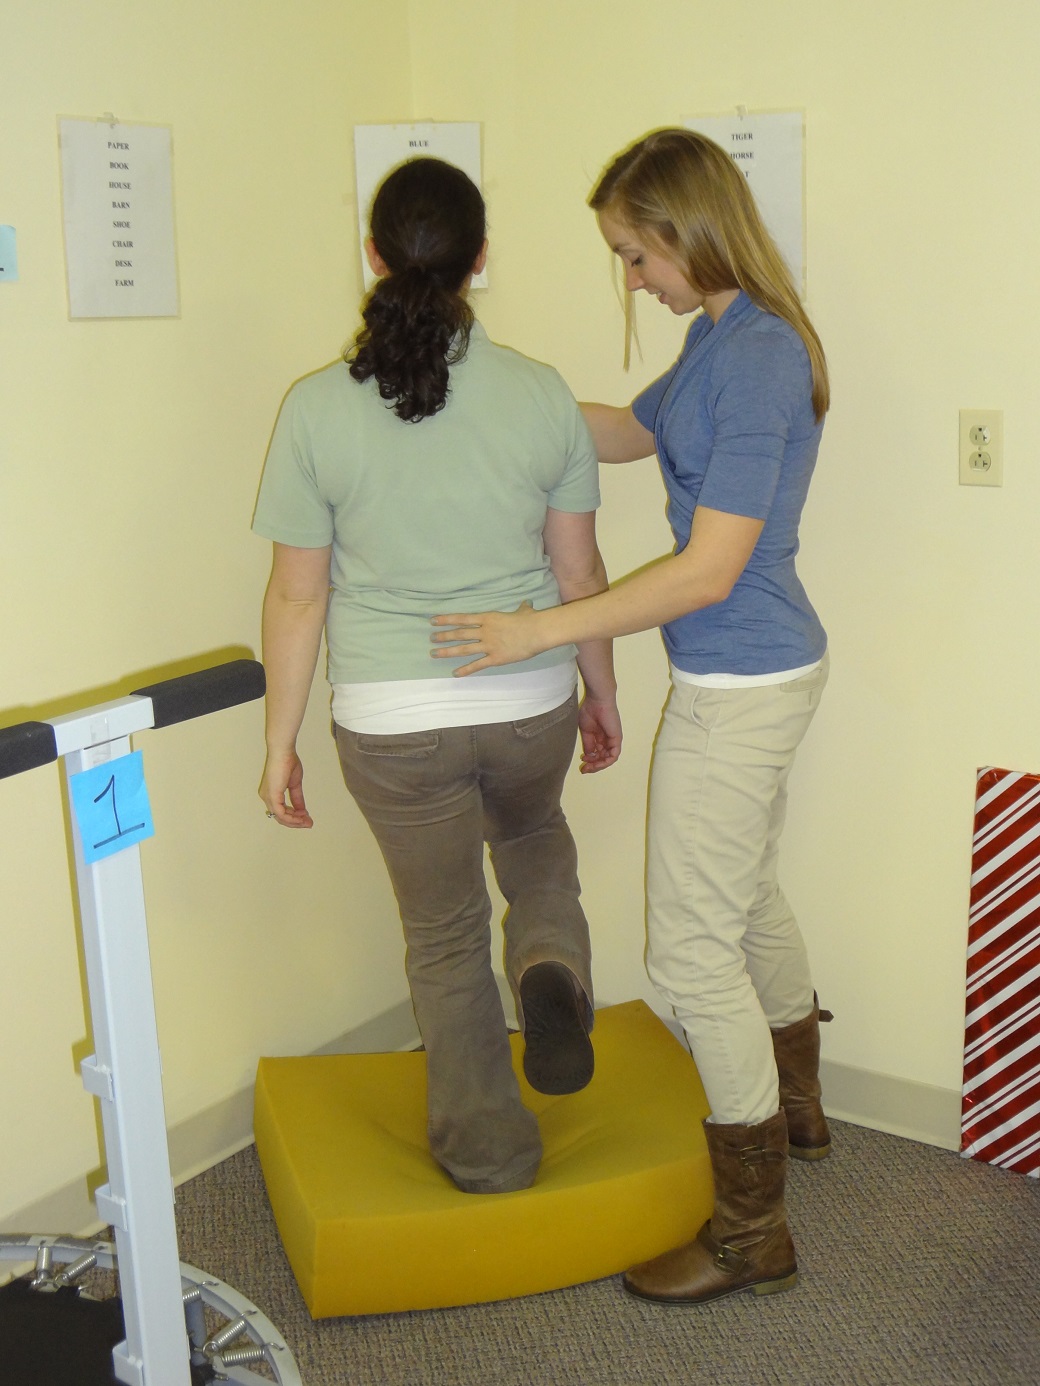 Vestibular Balance Rehabilitation Therapy (VBRT)